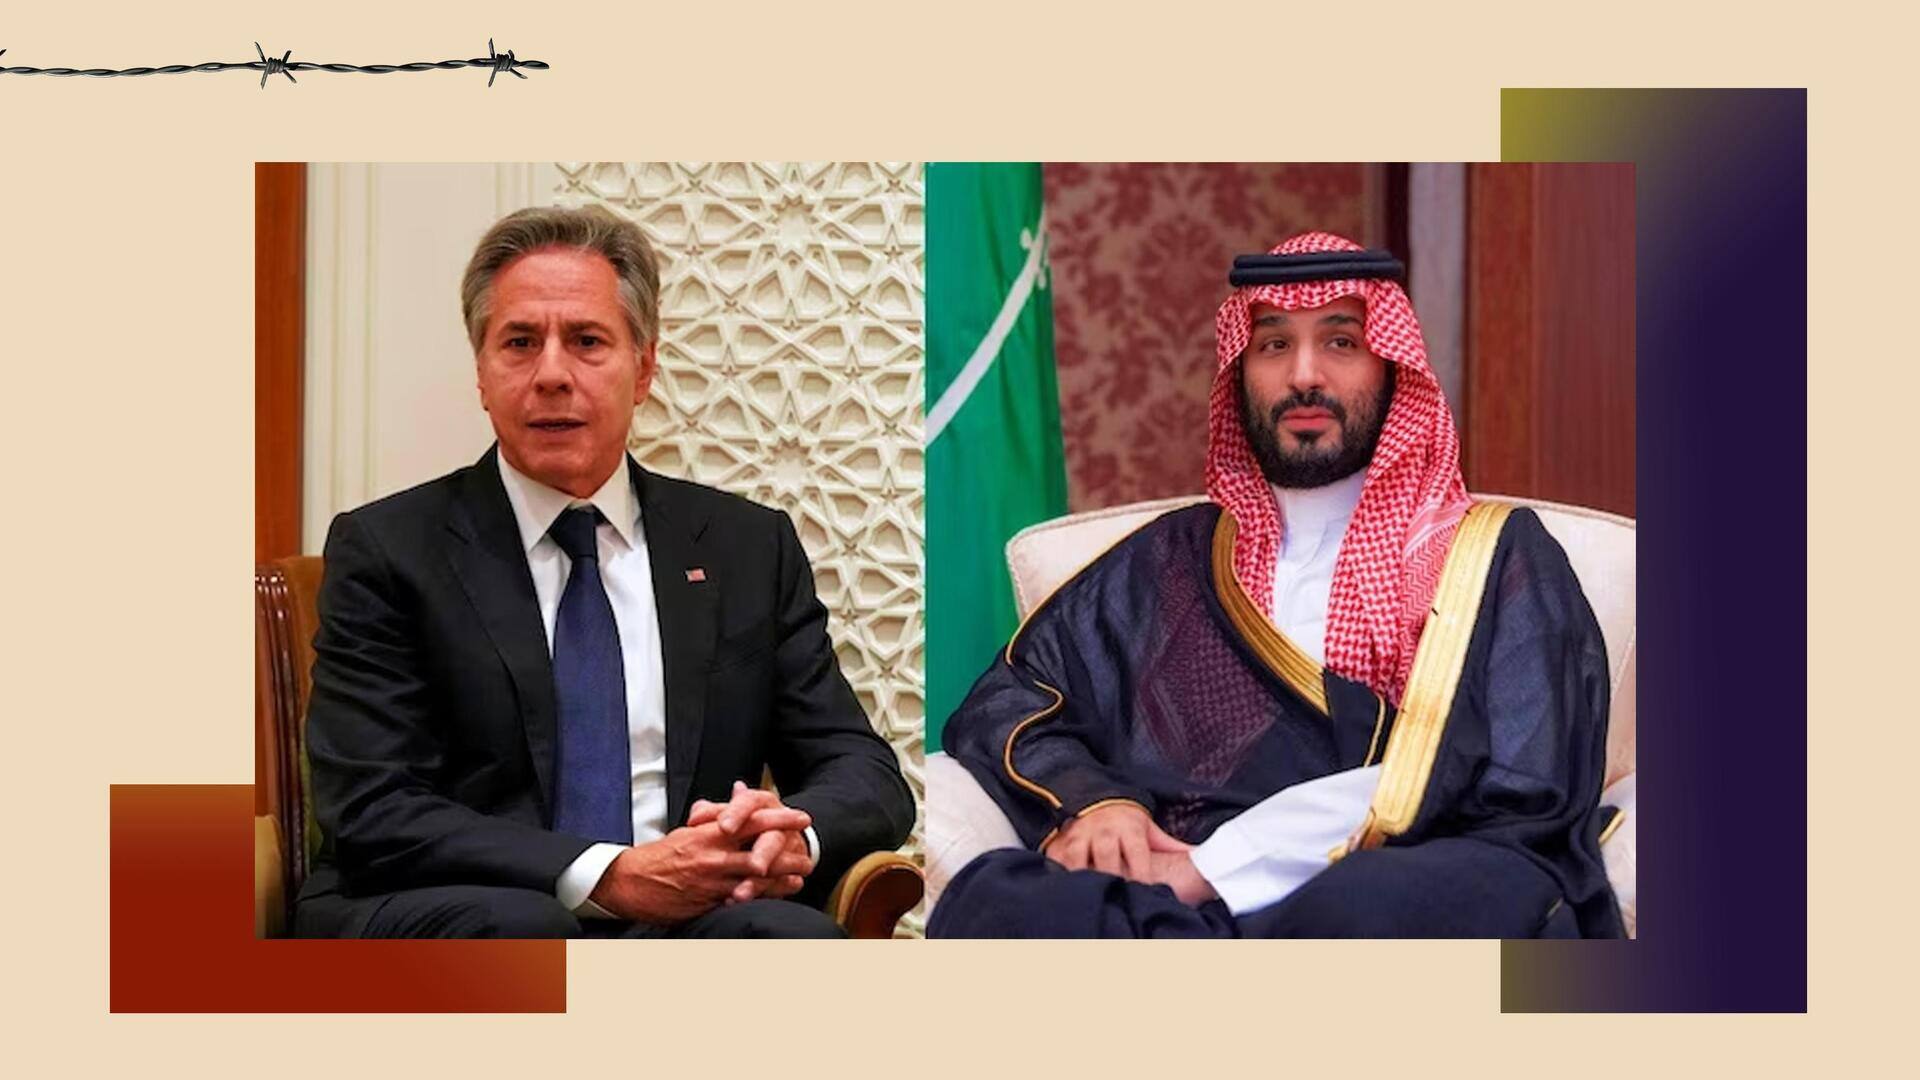 सऊदी अरब में अमेरिकी विदेश मंत्री की 'बेइज्जती', युवराज मोहम्मद बिन सलमान ने कराया घंटों इंतजार 